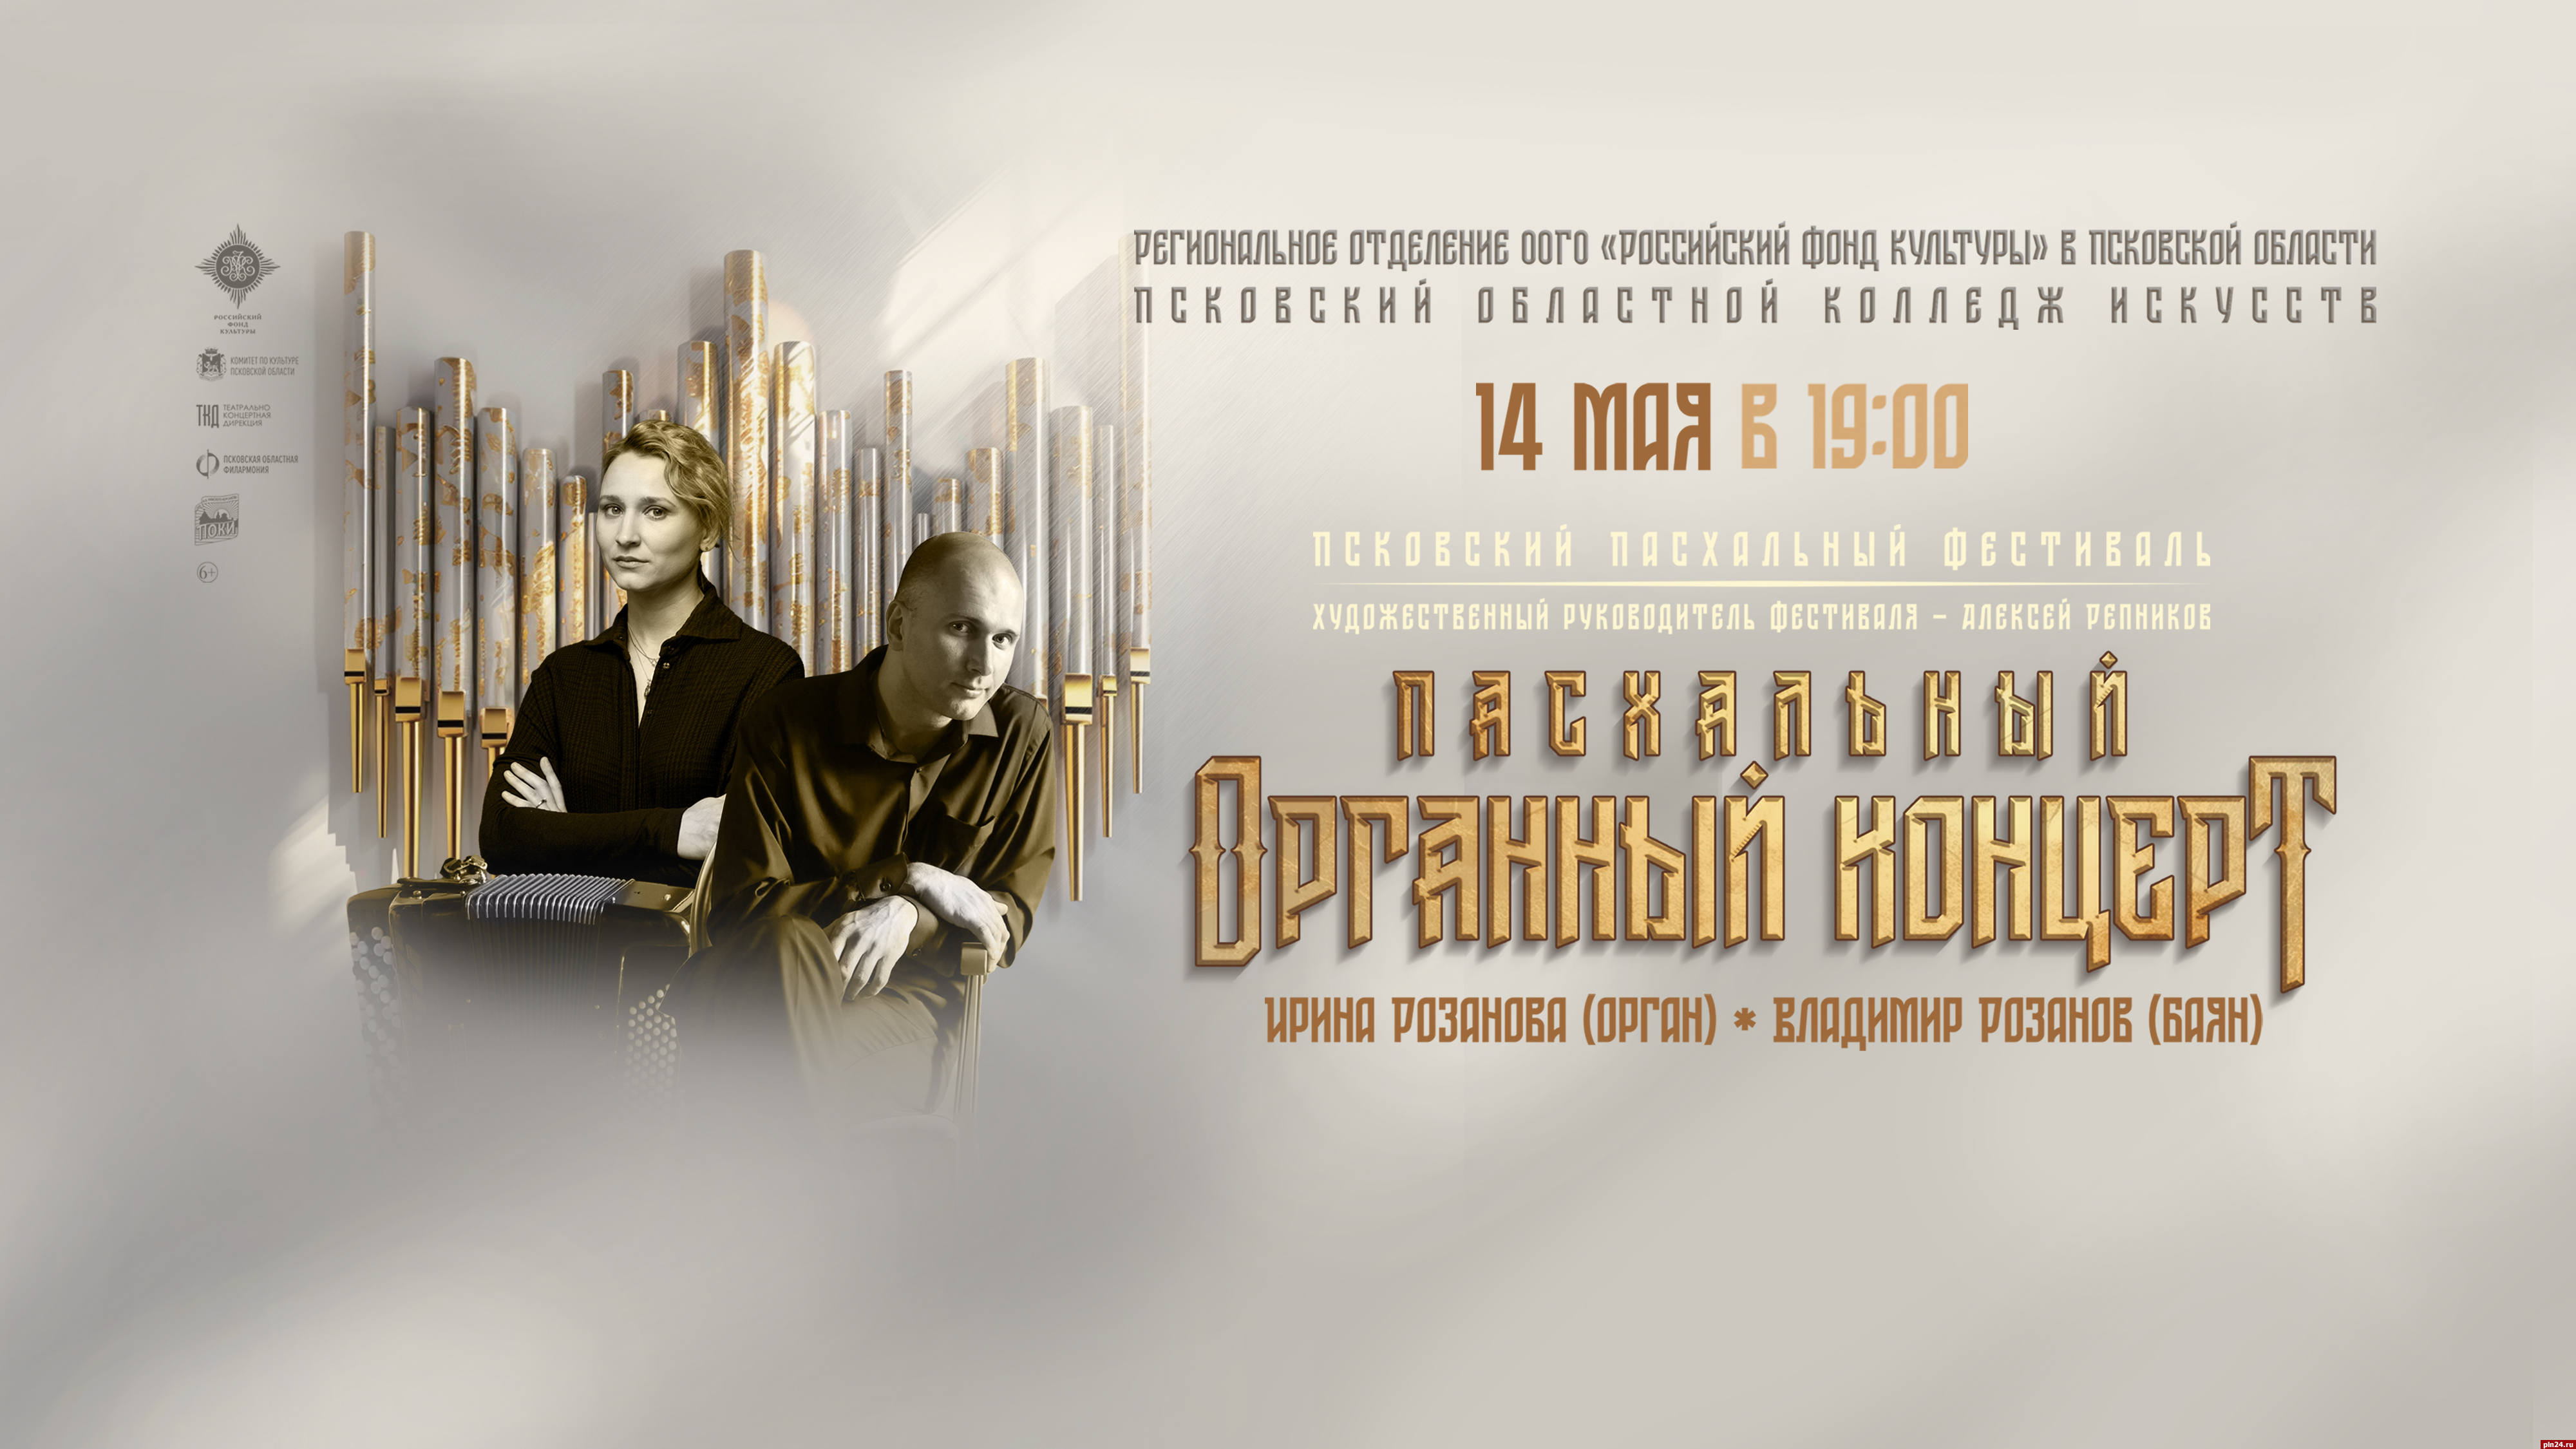 Пасхальный органный концерт пройдет в Пскове 14 мая